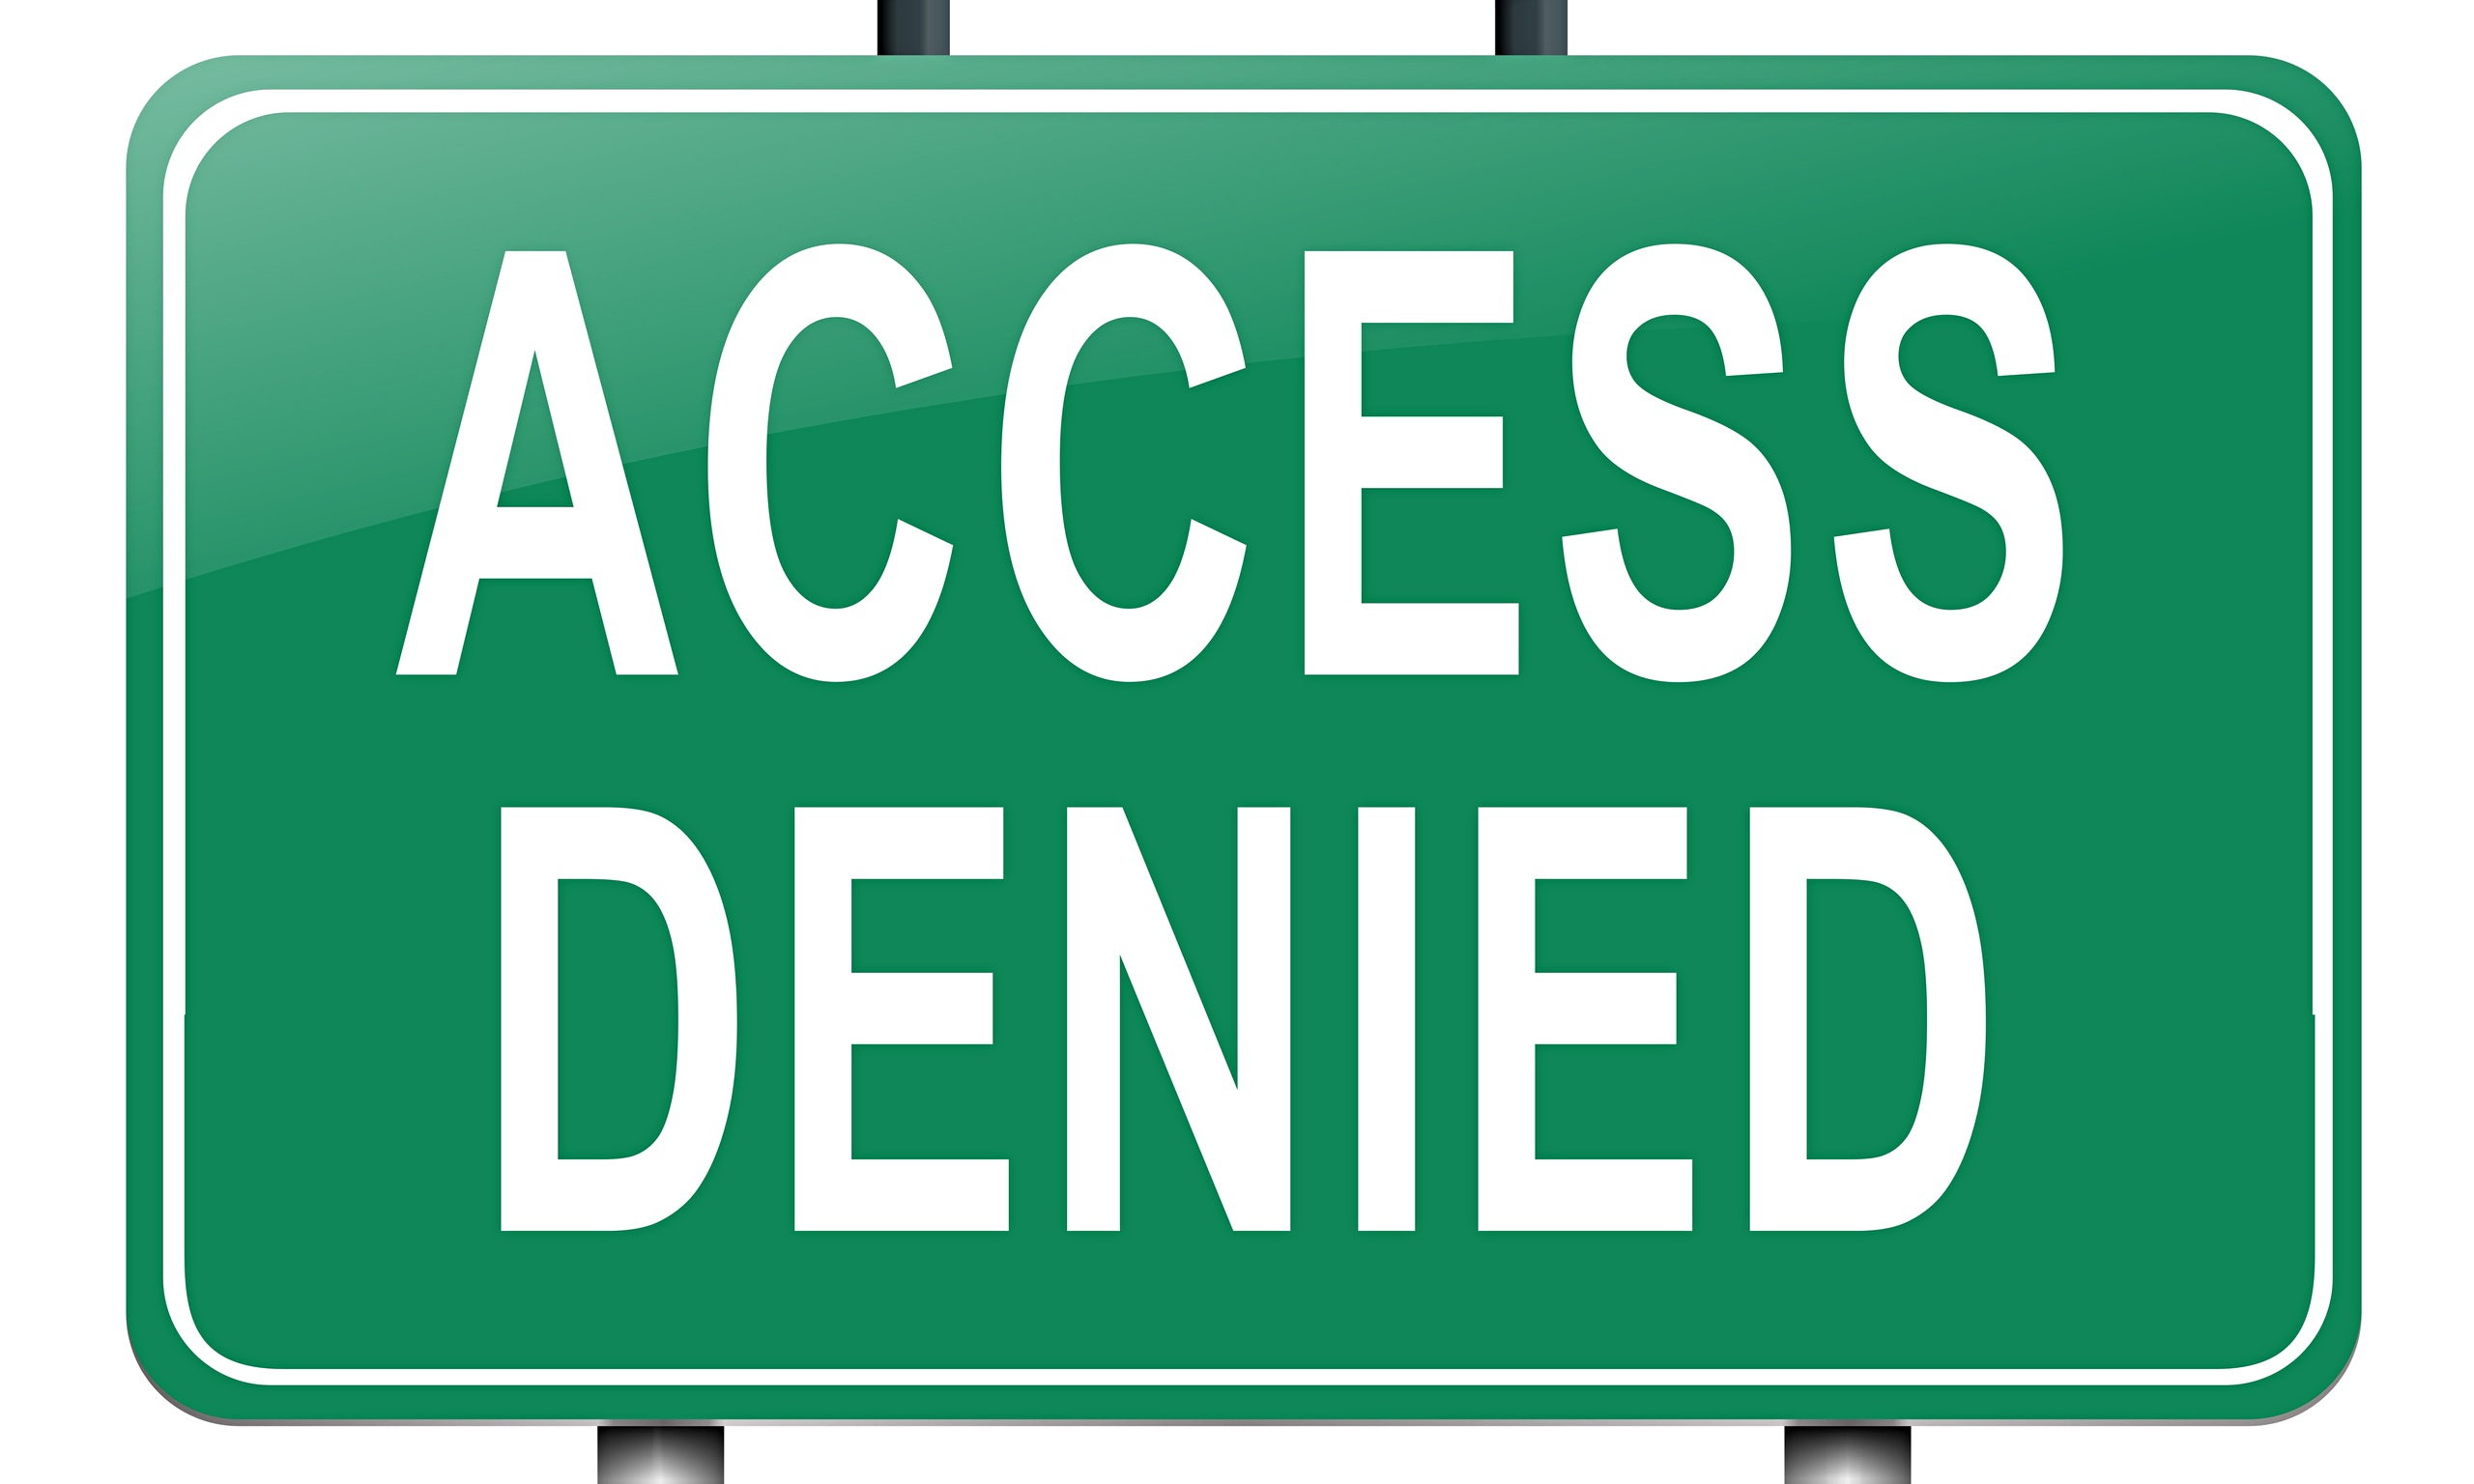 Account access denied. Access denied. Access denied PC.